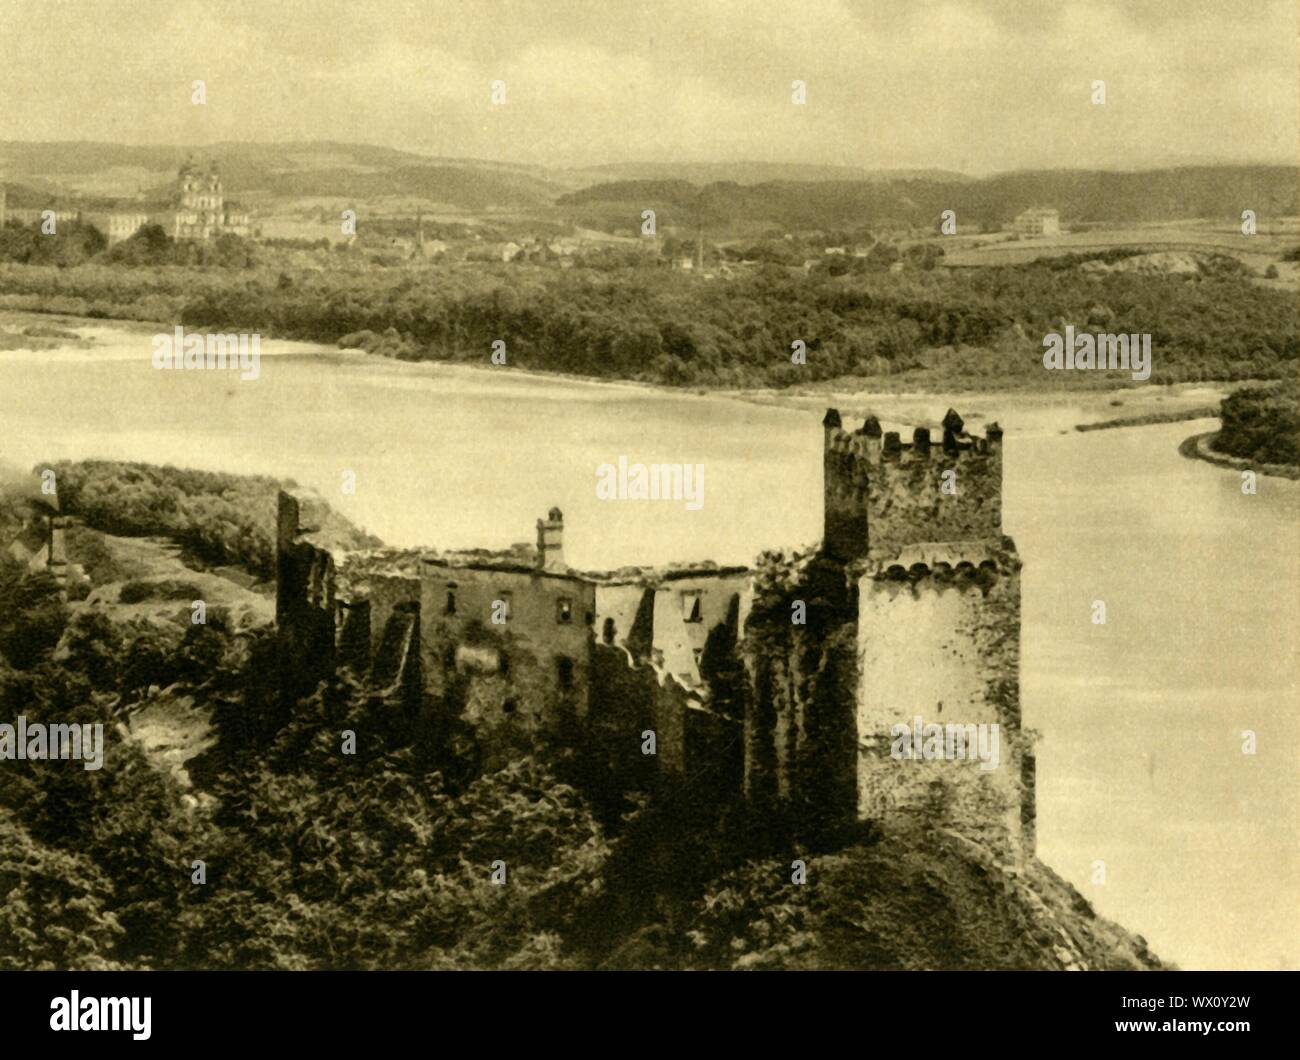 Il castello di Weitenegg, Wachau, Austria inferiore, c1935. Castello in rovina e si affaccia sul fiume Danubio. Da "&#xd6;sterreich - Land und Volk", (l'Austria, la terra e la gente). [R. Lechner (Wilhelm M&#xfc;iler), Vienna, c1935] Foto Stock